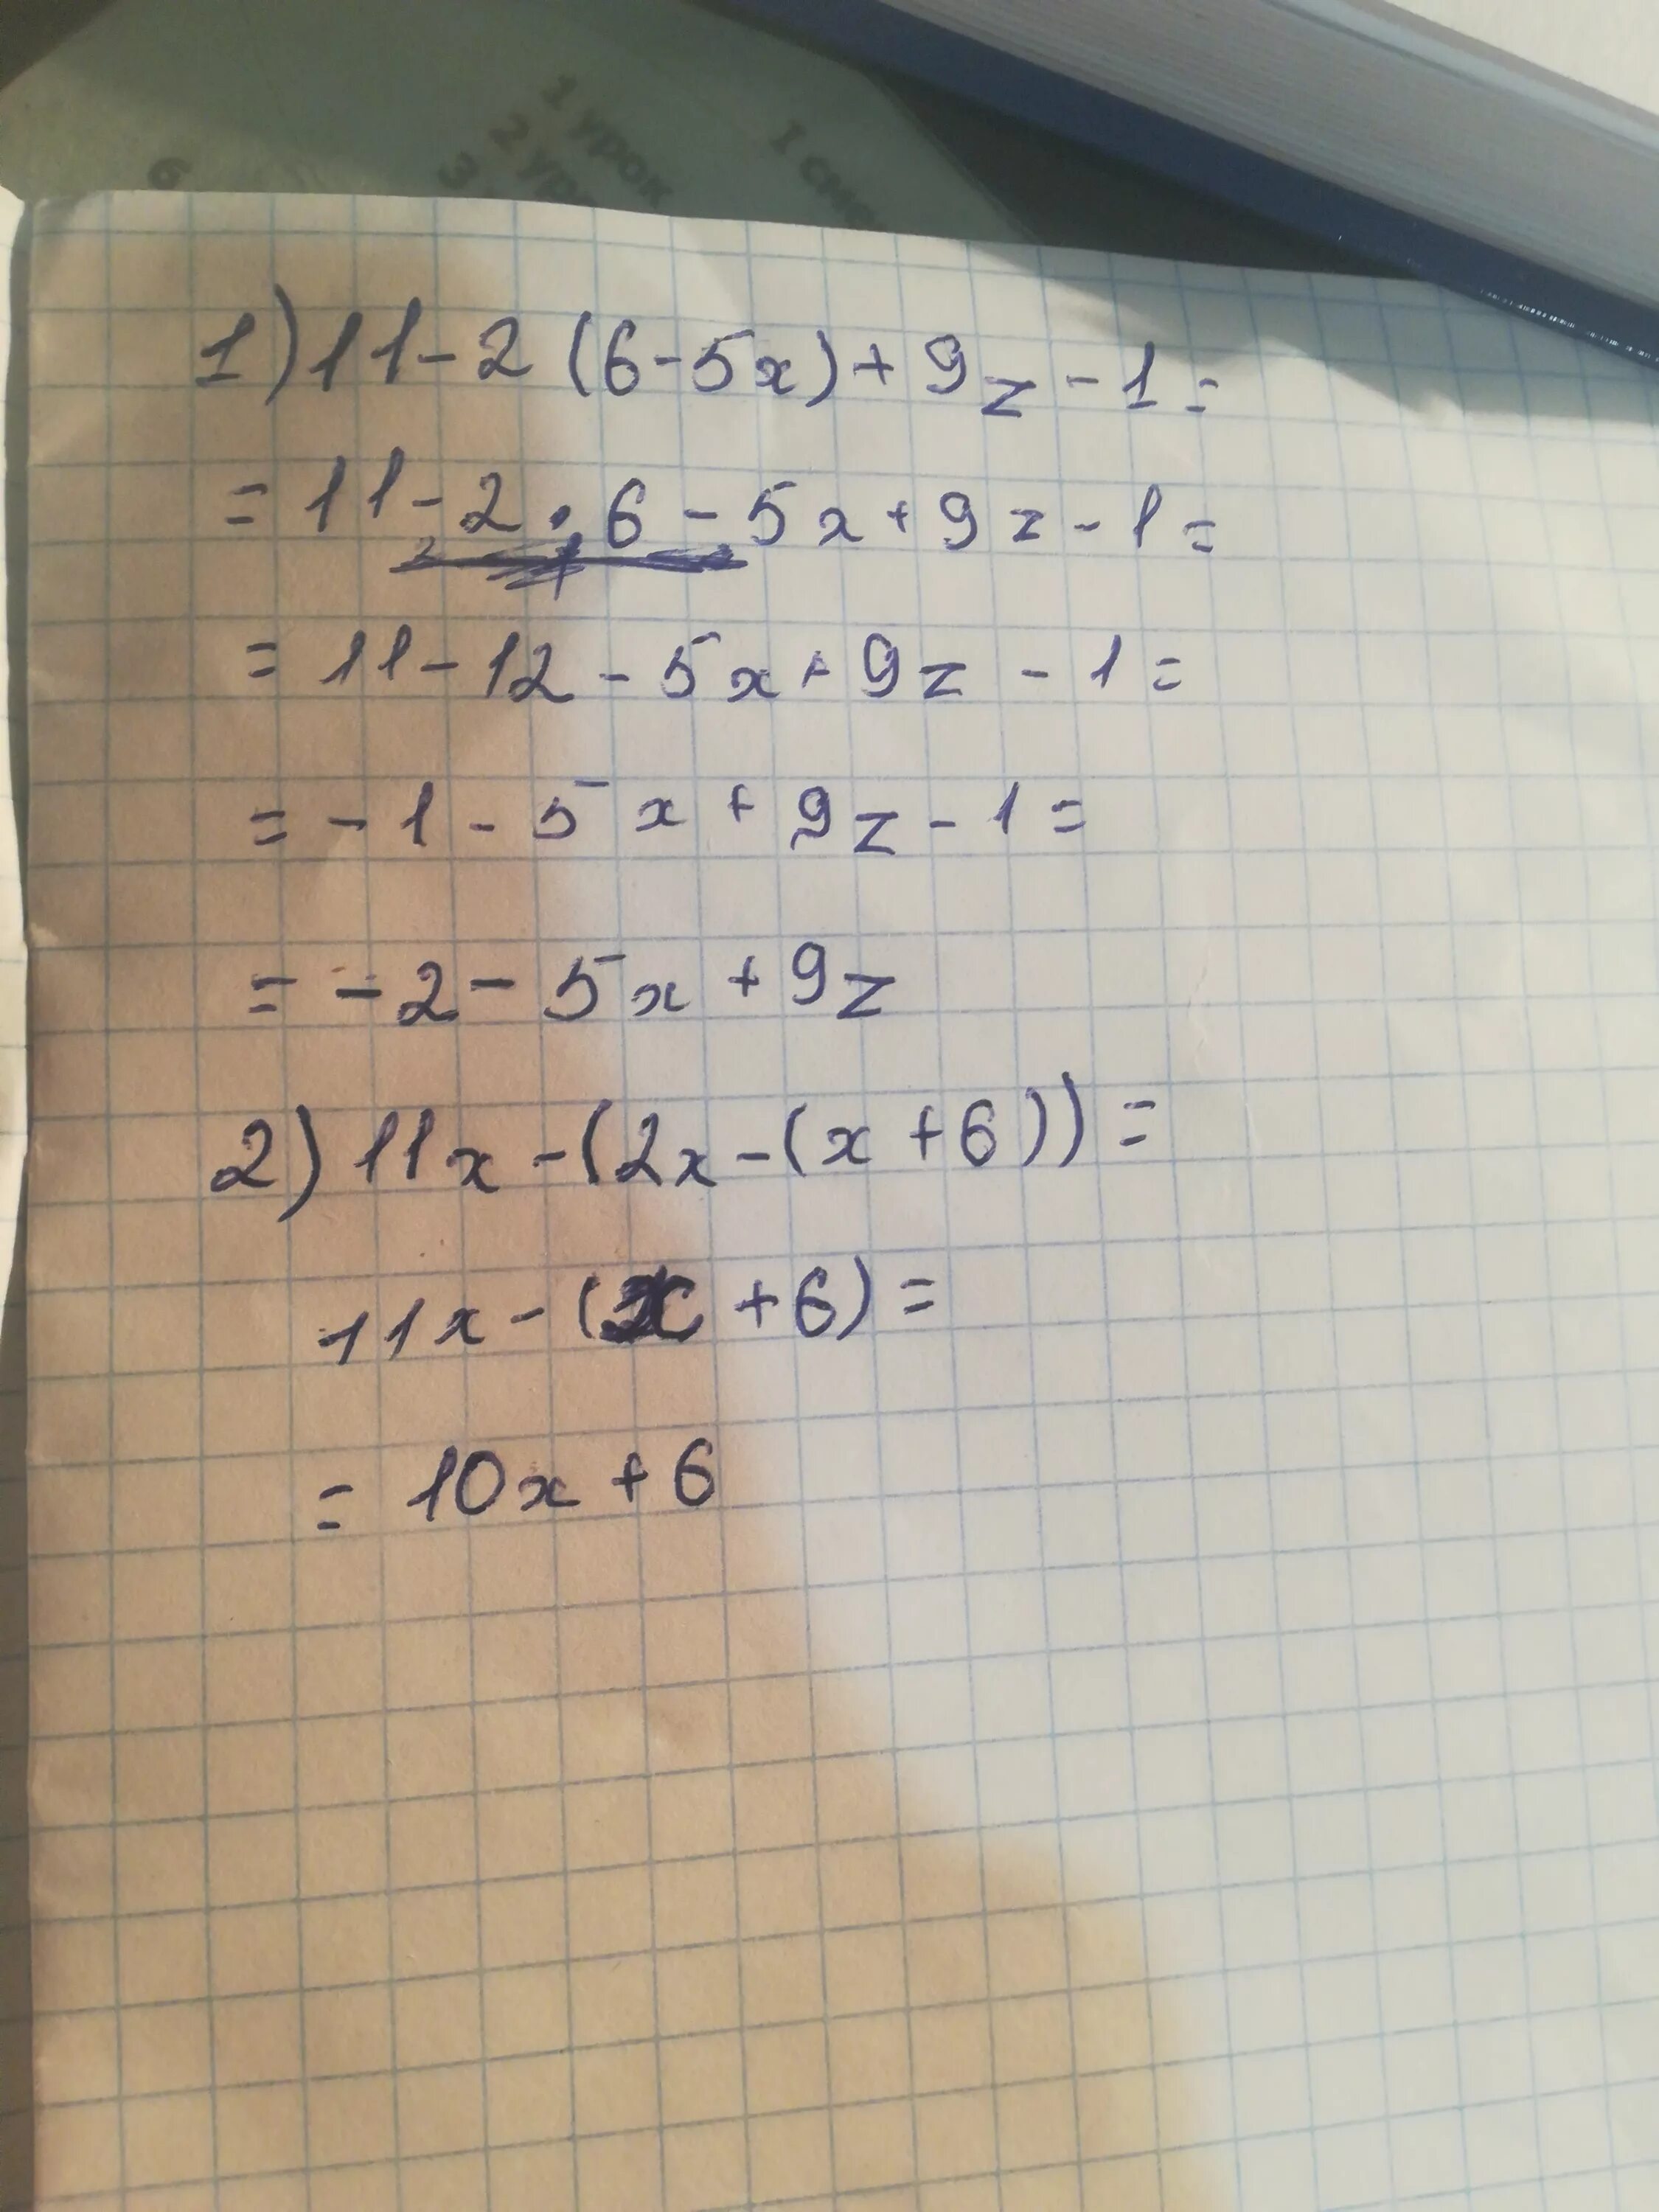 21 5 3 x 6. (X-5)(X+6)=0. X-6-11. 11x=6+5(2x-1). (X+6) =(11-Х)..